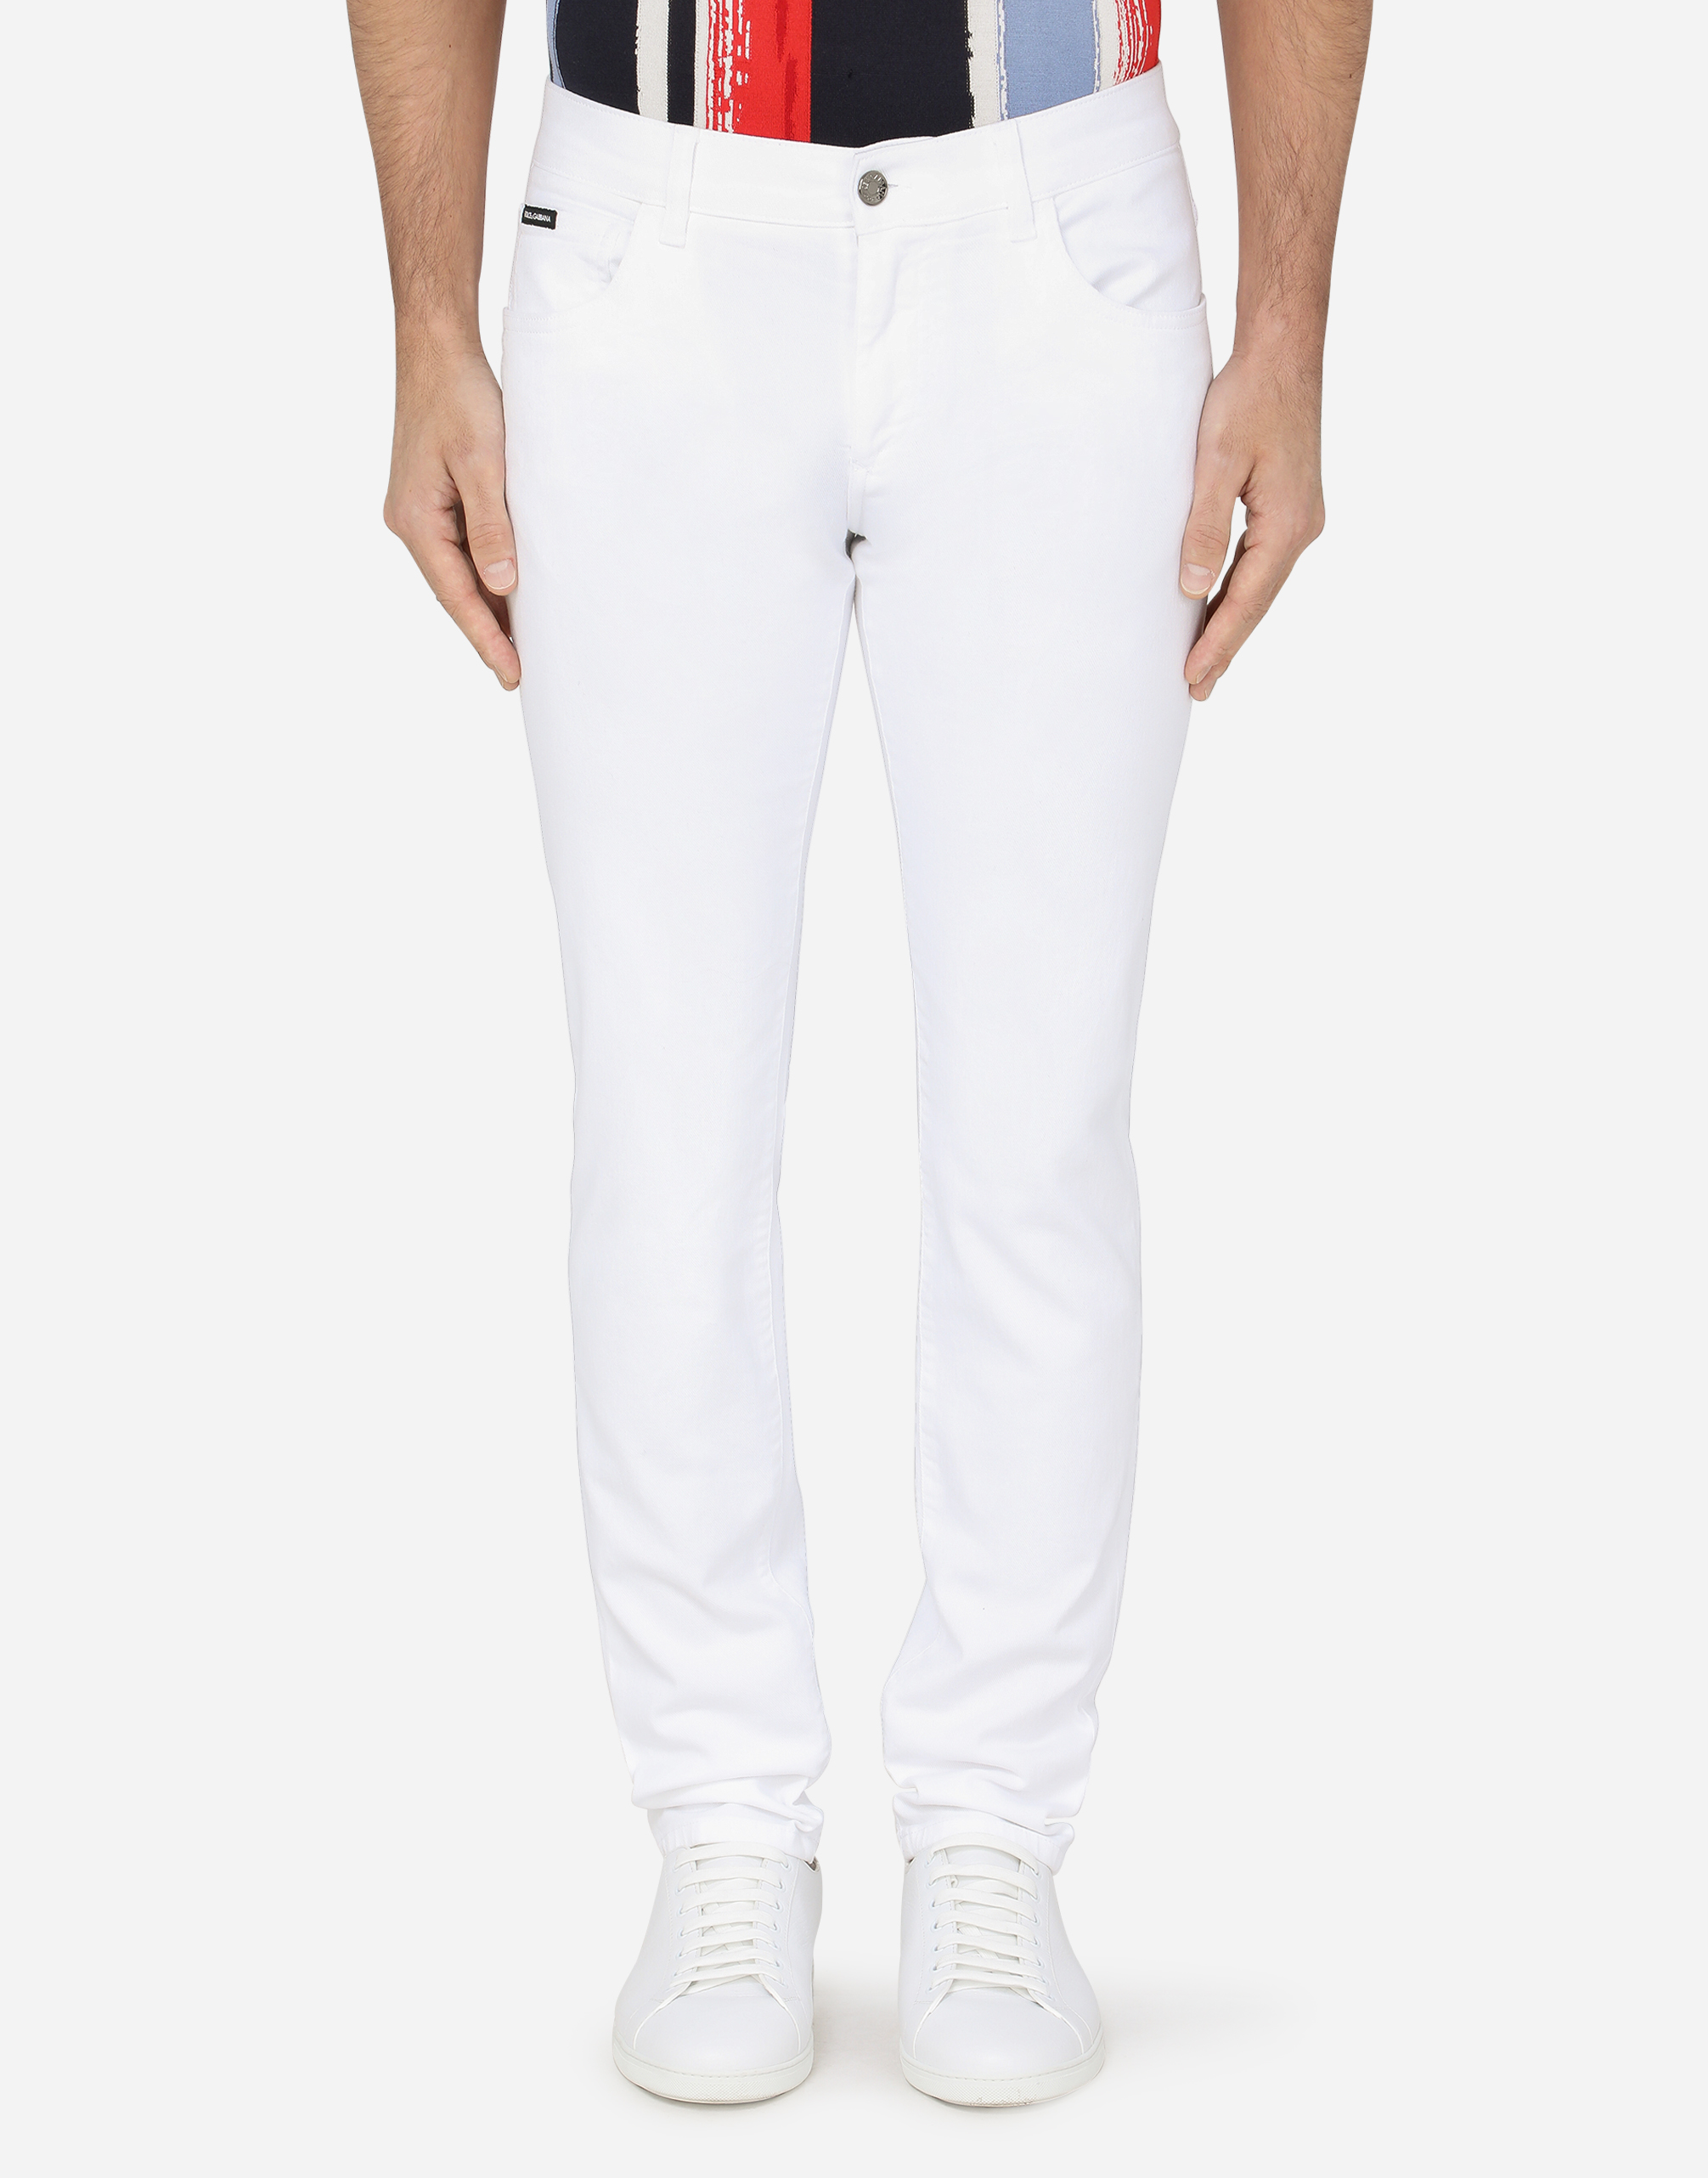 Dolce & Gabbana White Skinny Stretch Jeans